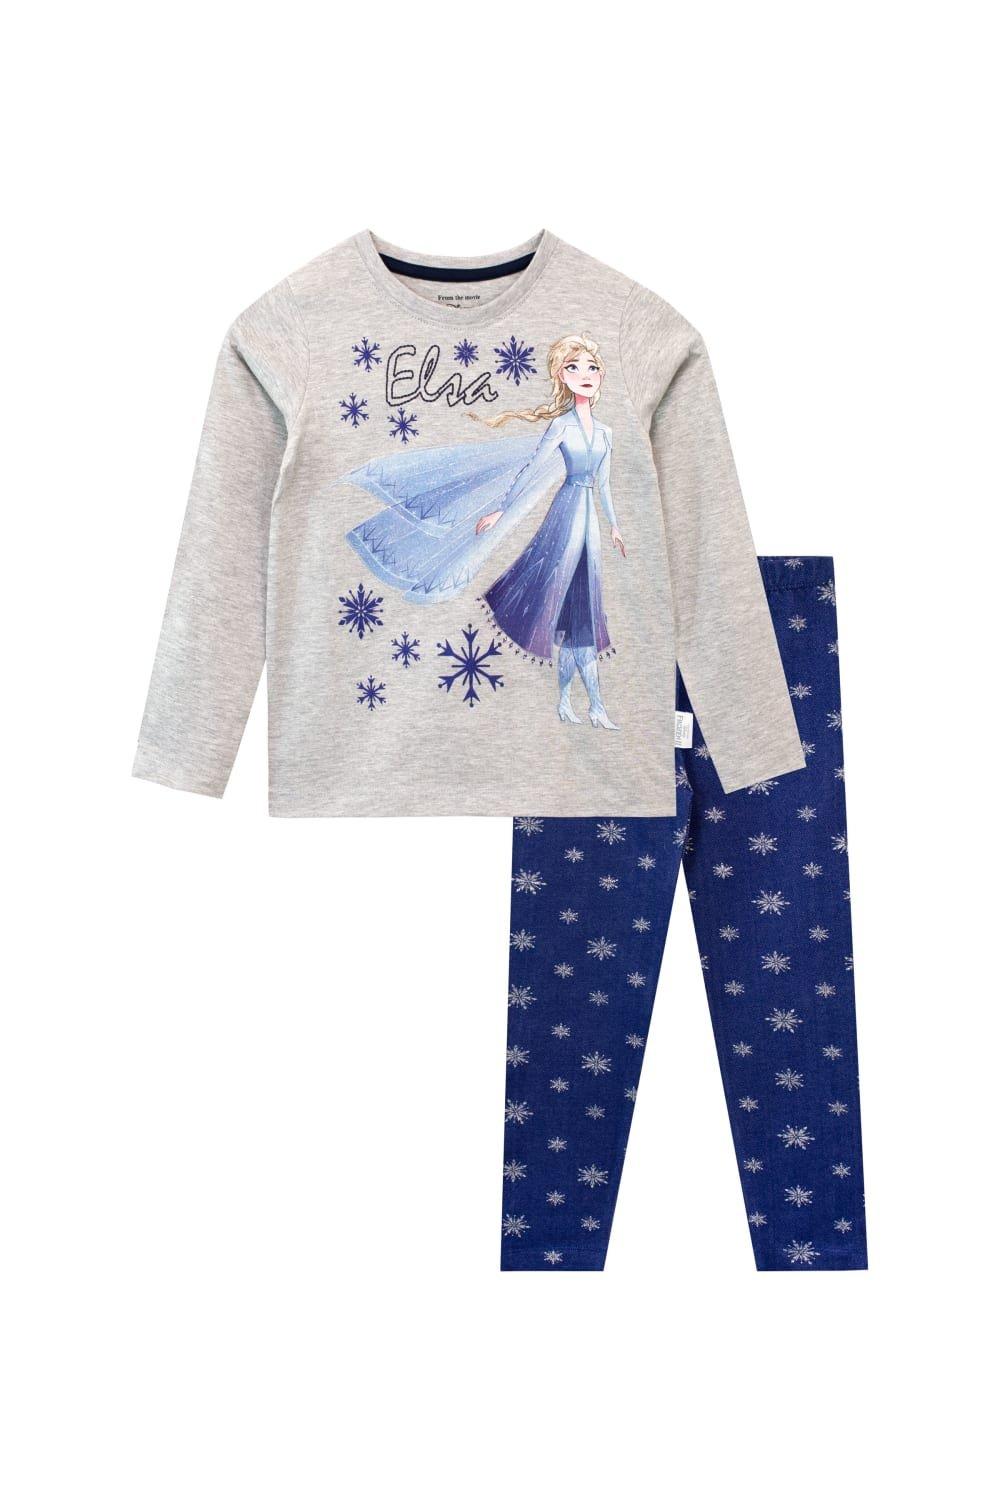 Комплект из топа и леггинсов Frozen Elsa Snowflake Disney, серый комплект из топа и леггинсов bsw colors черный xs